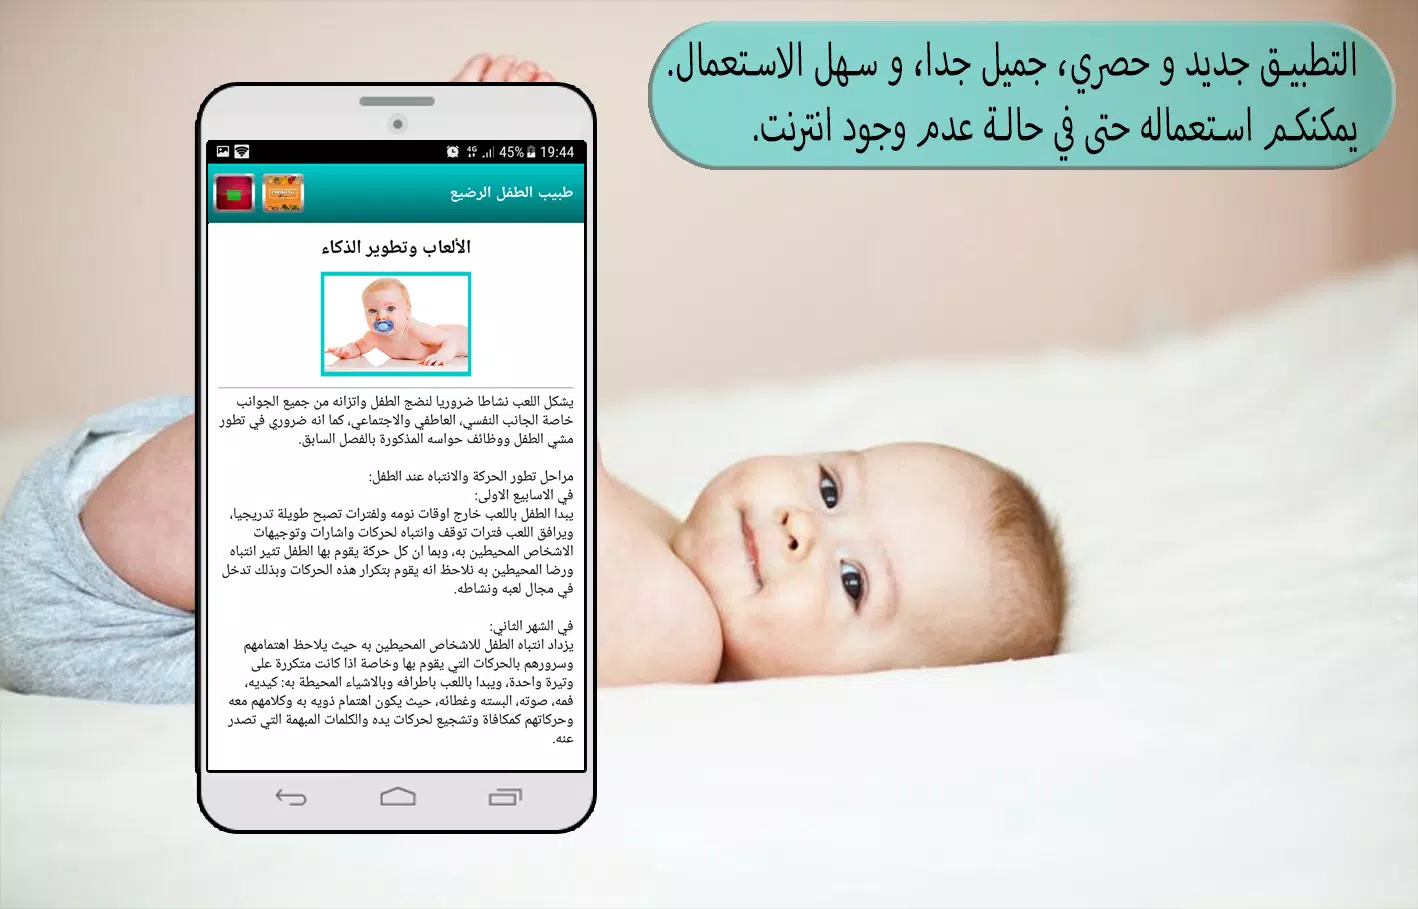 غير متوقع ملابس كومة  طبيب الطفل الرضيع for Android - APK Download